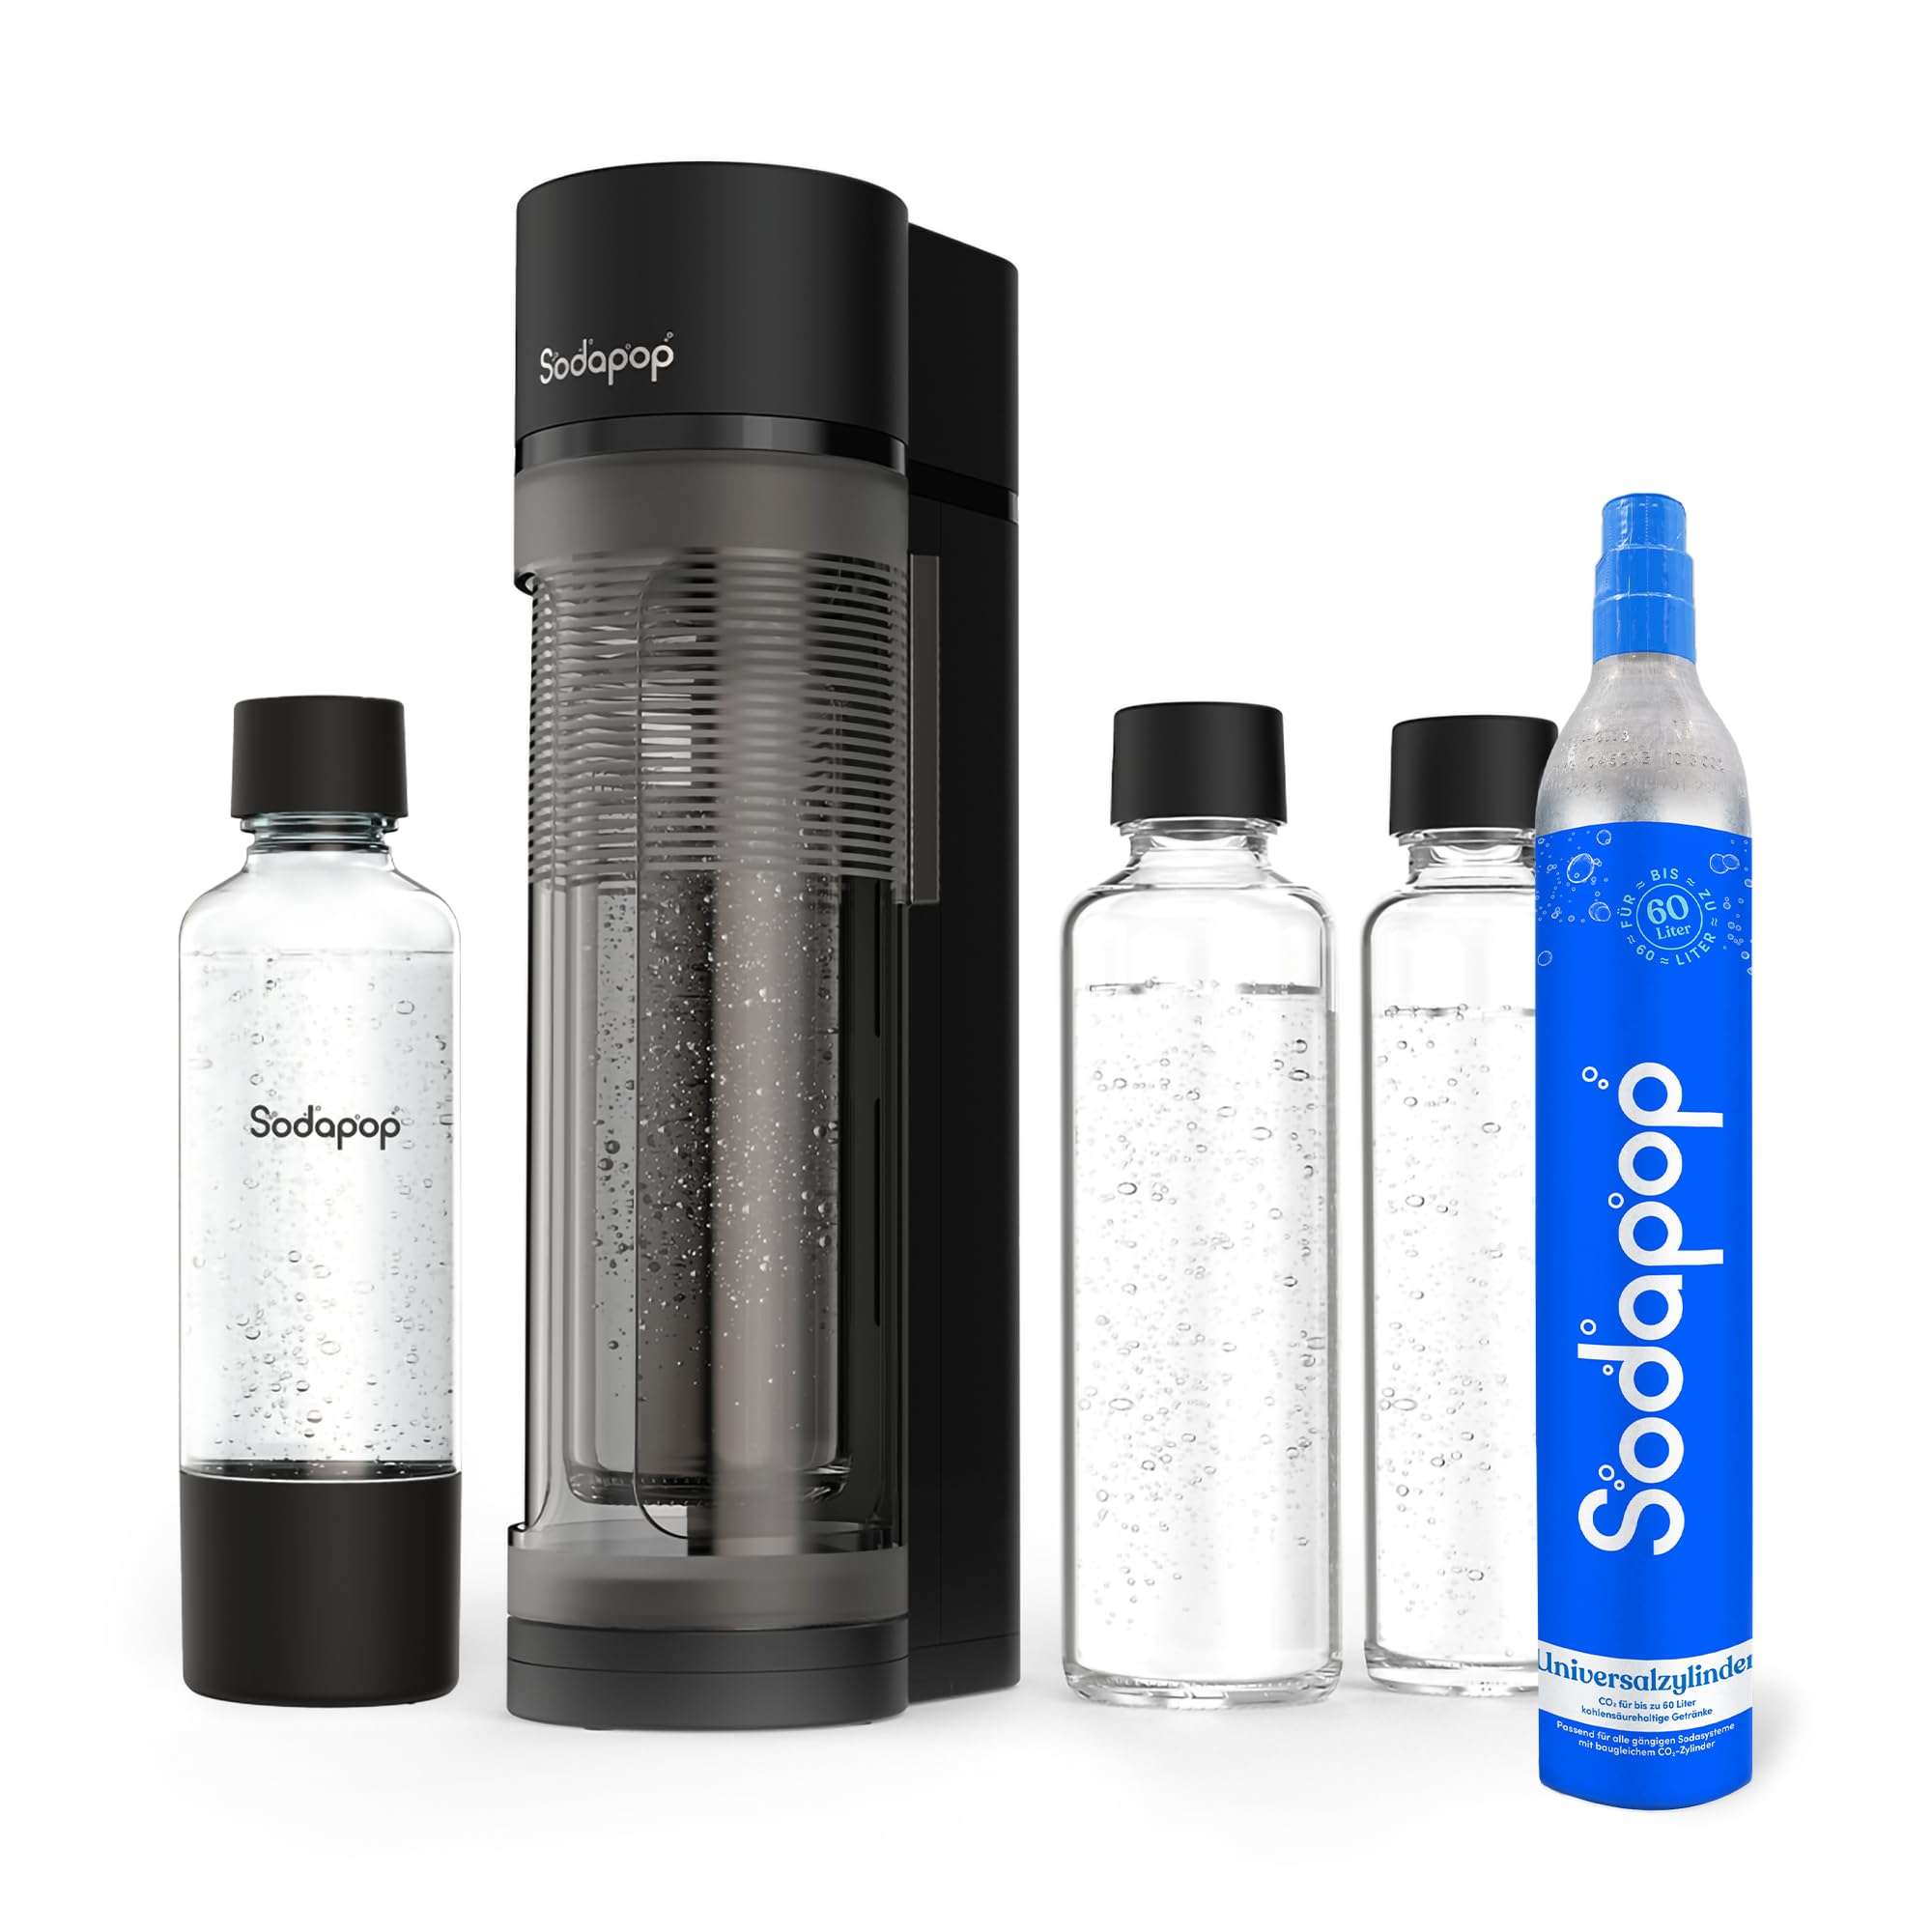 Sodapop Wassersprudler Logan Starterset mit CO₂-Zylinder, inkl. 2 Glasflaschen (850 & 600 ml) und 1 PET-Flasche (850 ml), Matt Schwarz, Höhe 42,6 cm